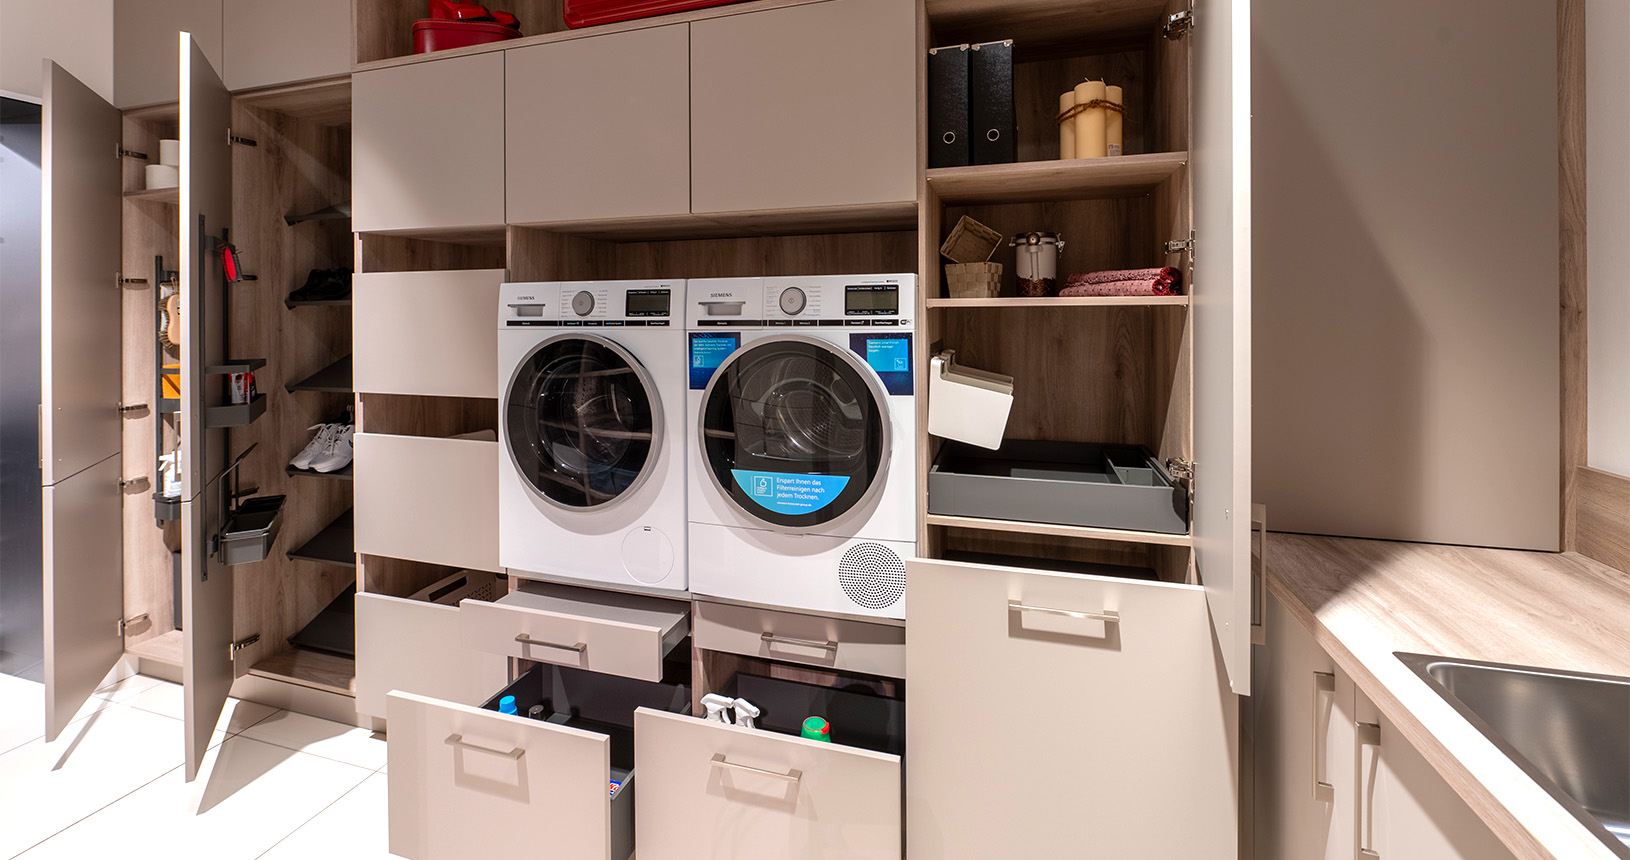 Hauswirtschaftsraum mit eingebauter Waschmaschine und Wäschetrockner in Hochschränken